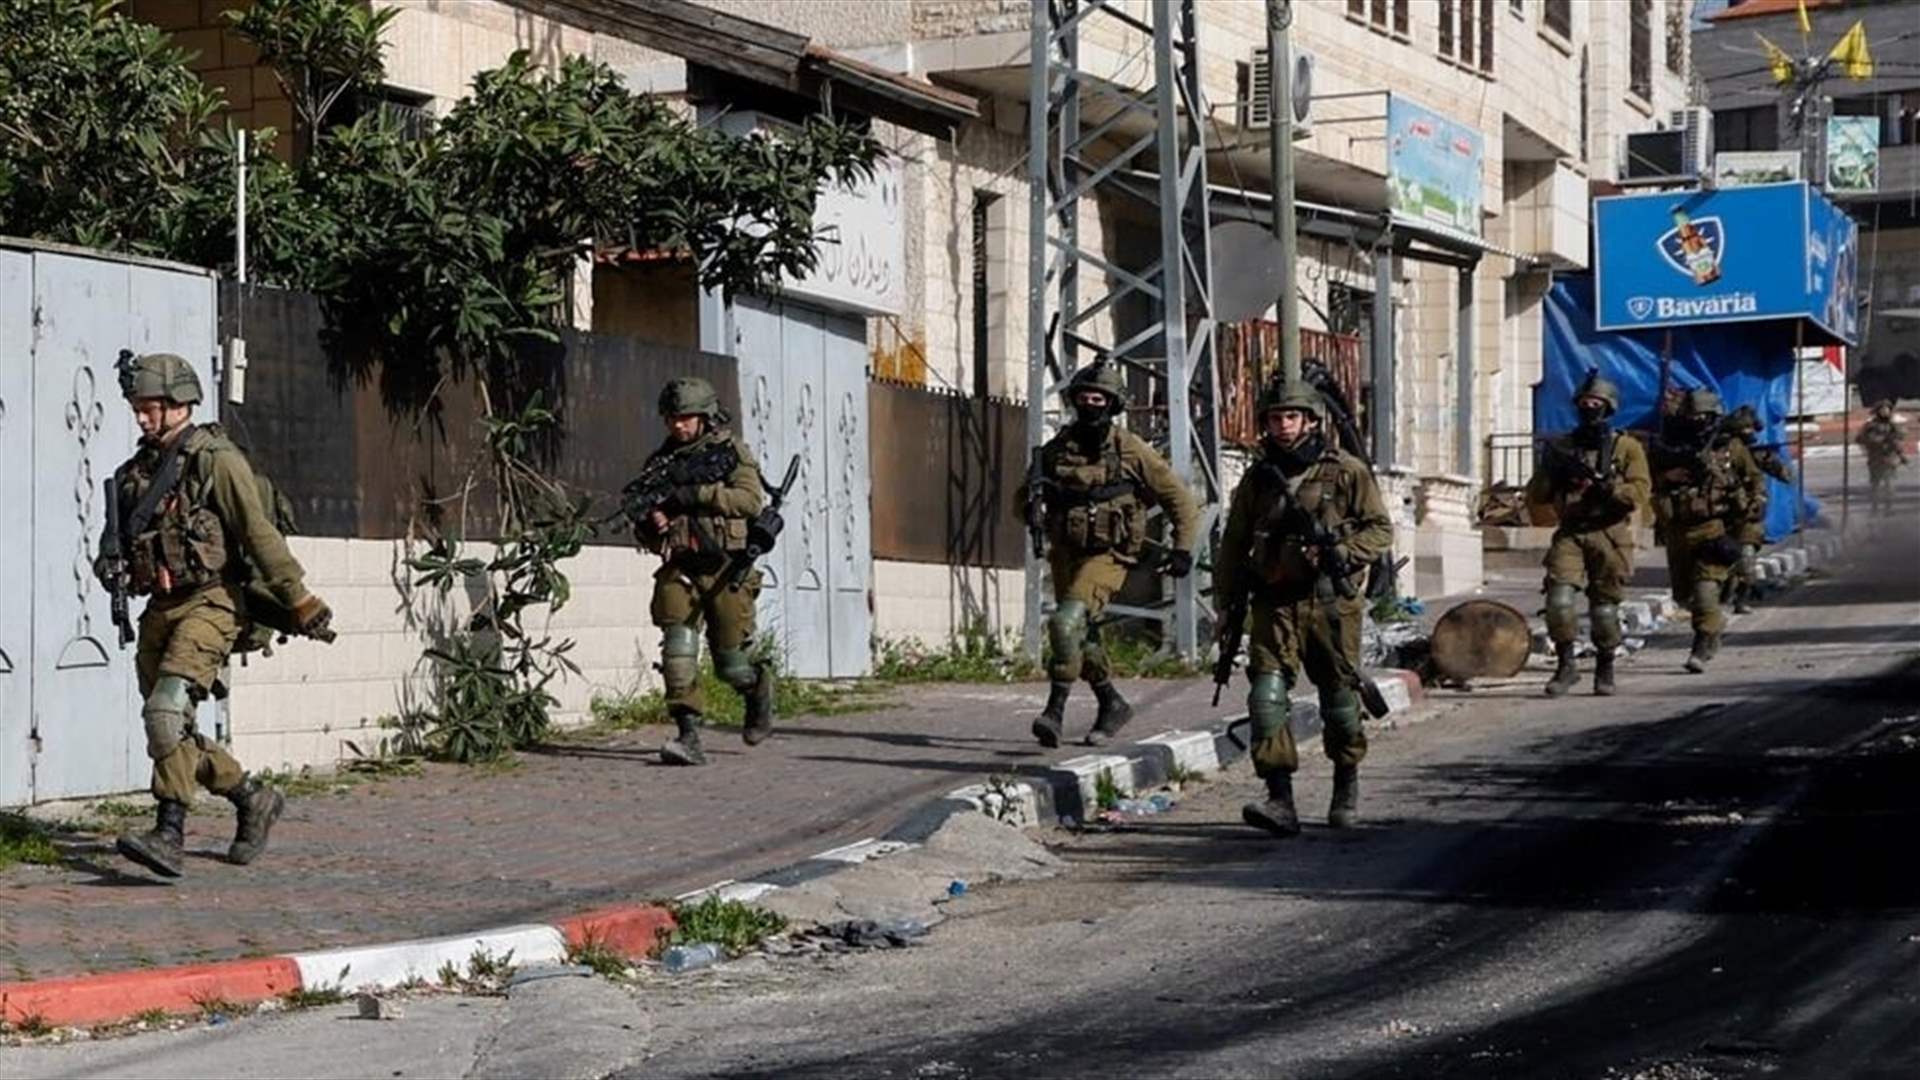 وزارة الصحة الفلسطينية: مقتل 3 فلسطينيين في مداهمة إسرائيلية في مدينة جنين في الضفة الغربية